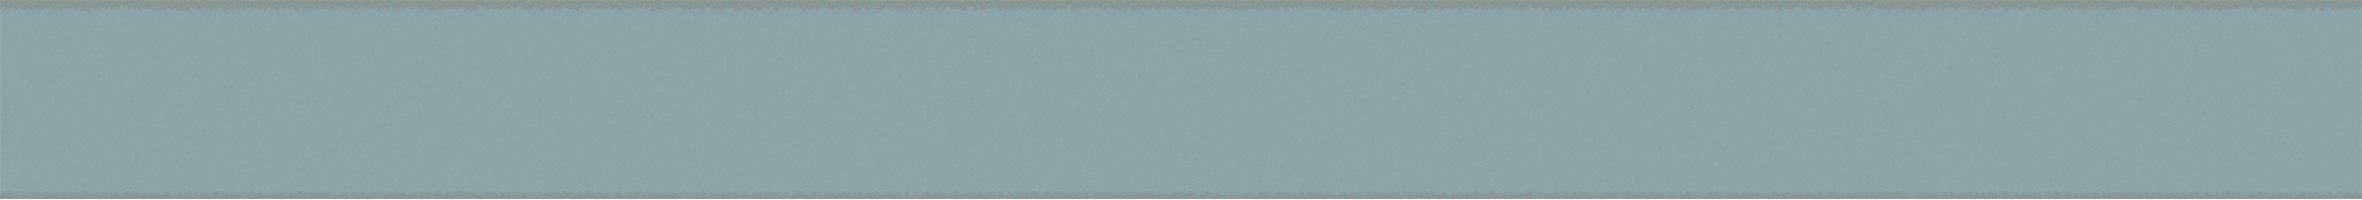 Бордюр Kerama Marazzi Бела-Виста голубой светлый матовый обрезной 2.5x30 SPA046R